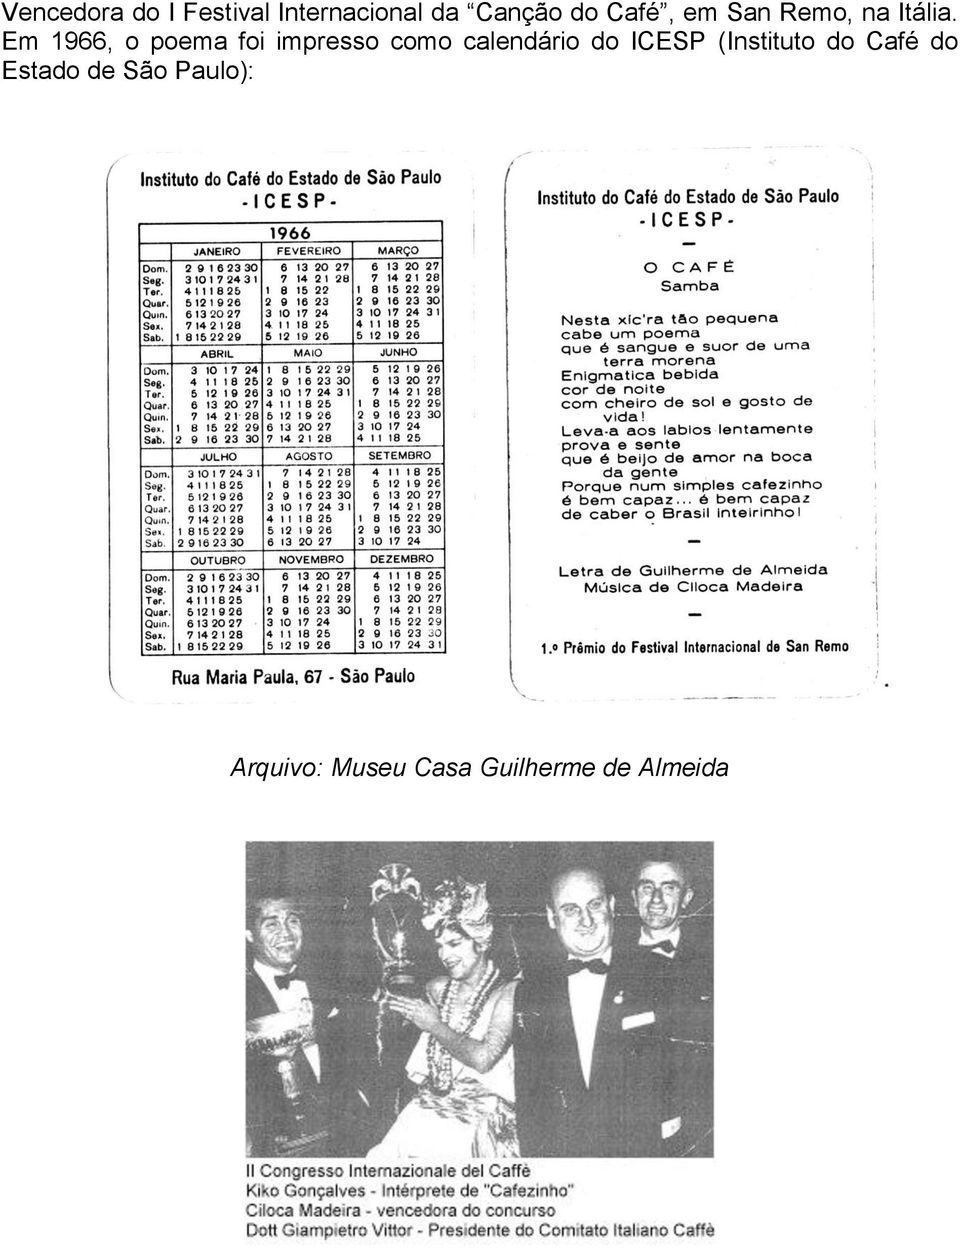 Em 1966, o poema foi impresso como calendário do ICESP